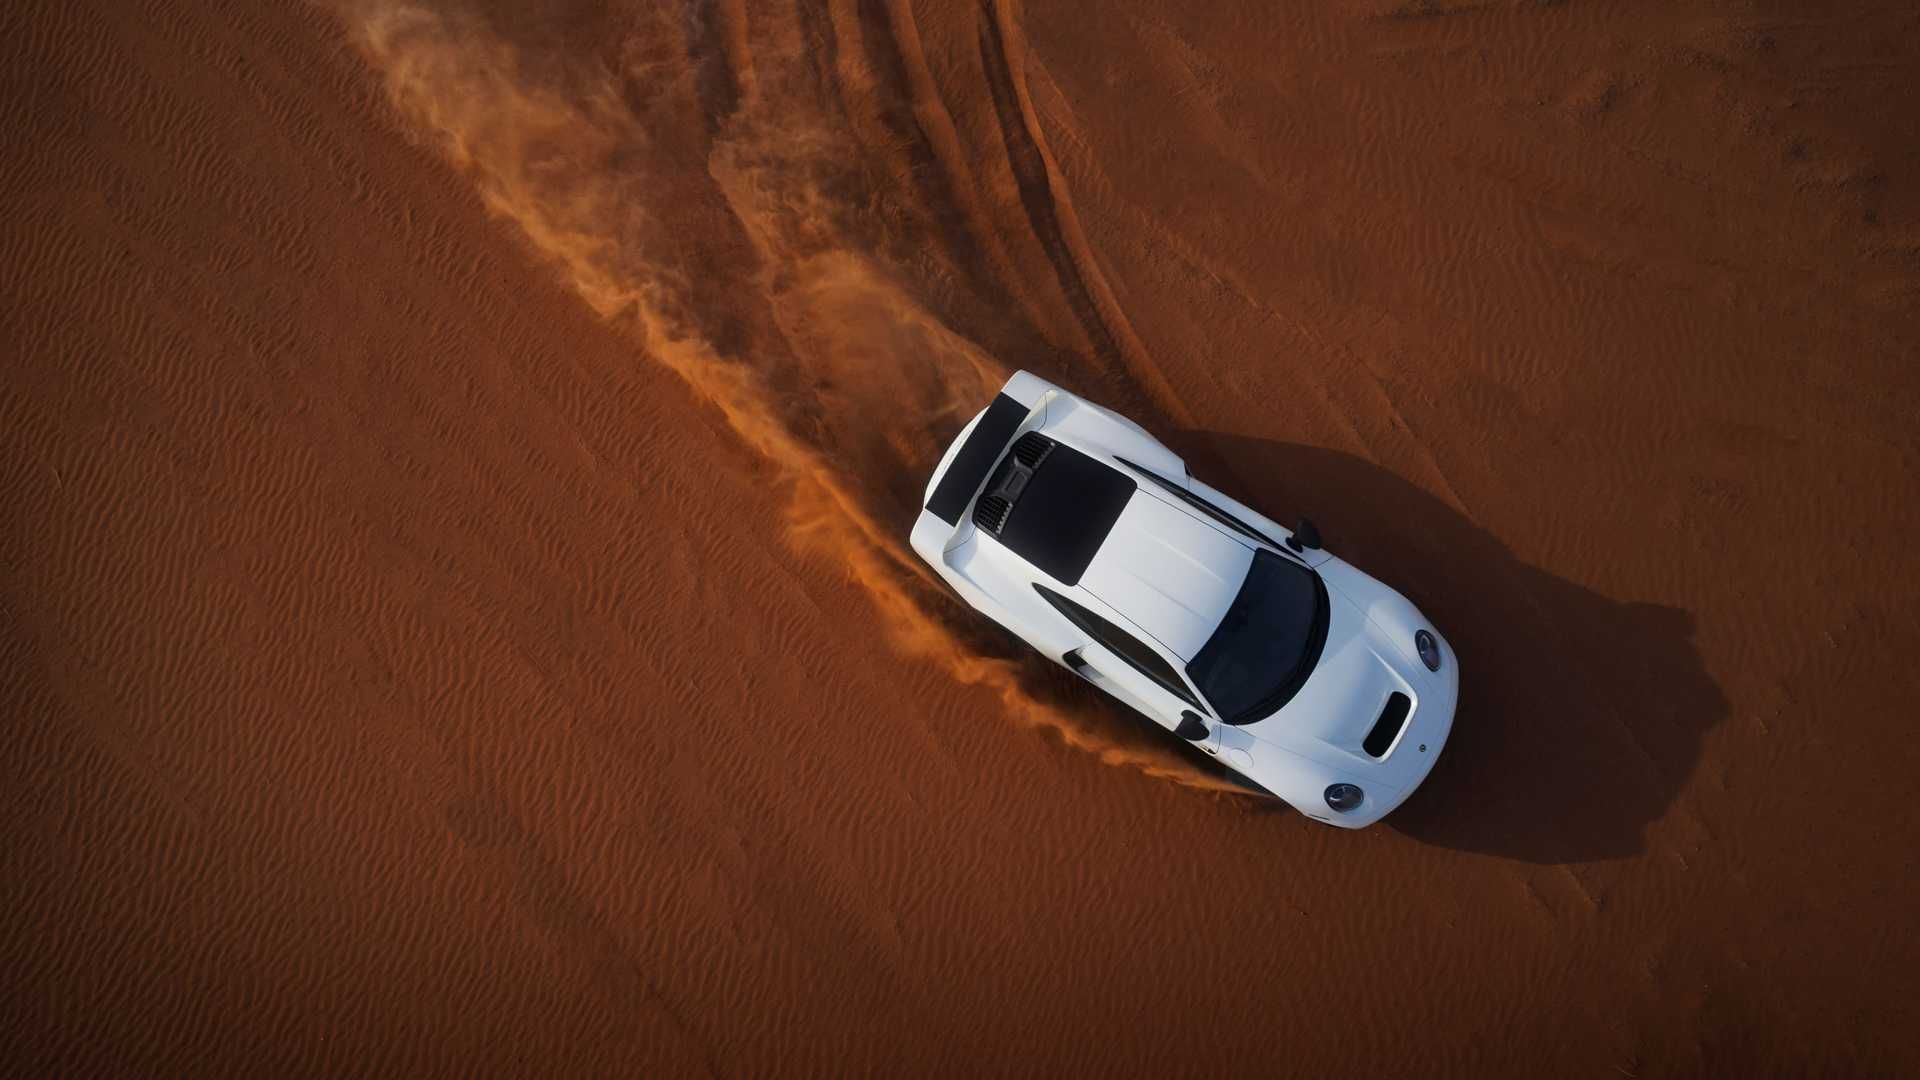 پورشه مارک فیلیپ گمبالا مرسین / Marc Philipp Gemballa Marsien Porsche در صحرا 